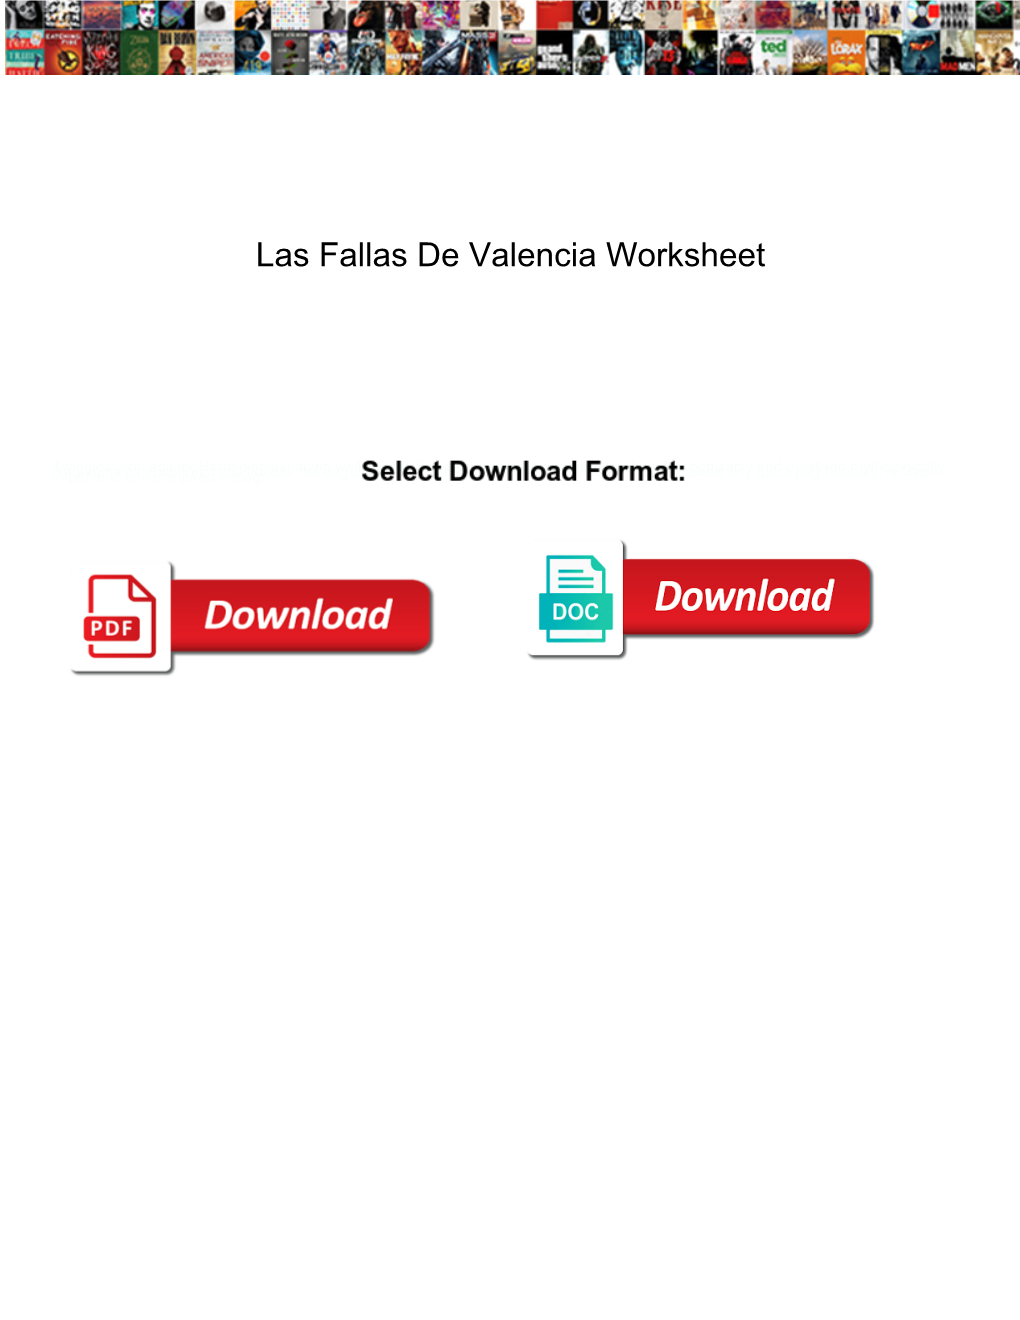 Las Fallas De Valencia Worksheet